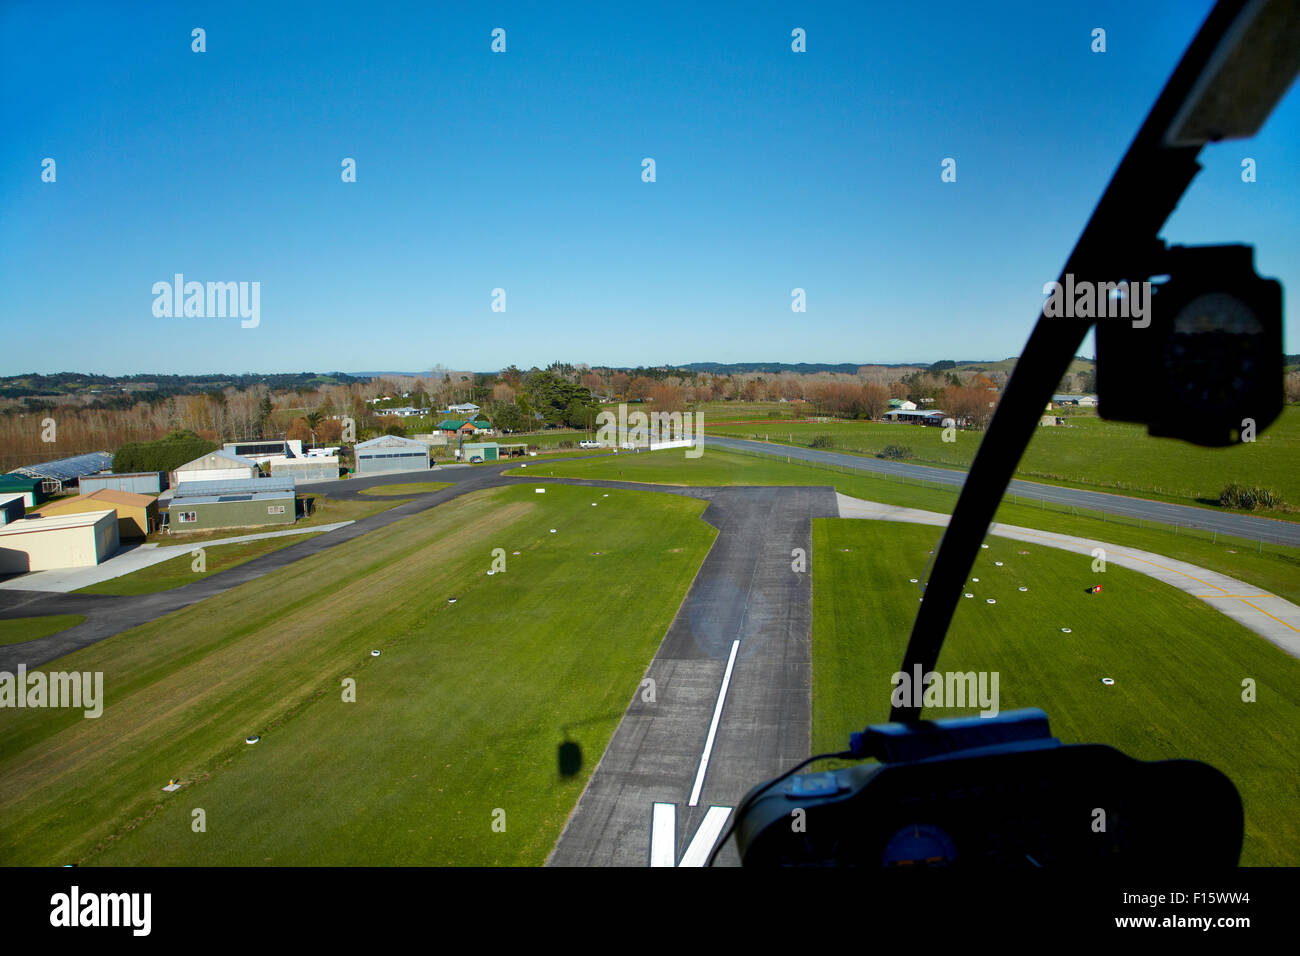 La piste de l'aérodrome de la Côte-Nord (aka télévision laitiers) aérodrome, vu de l'hélicoptère Robinson R22, produits laitiers Télévision, Auckland, Nouvelle-Zélande Banque D'Images